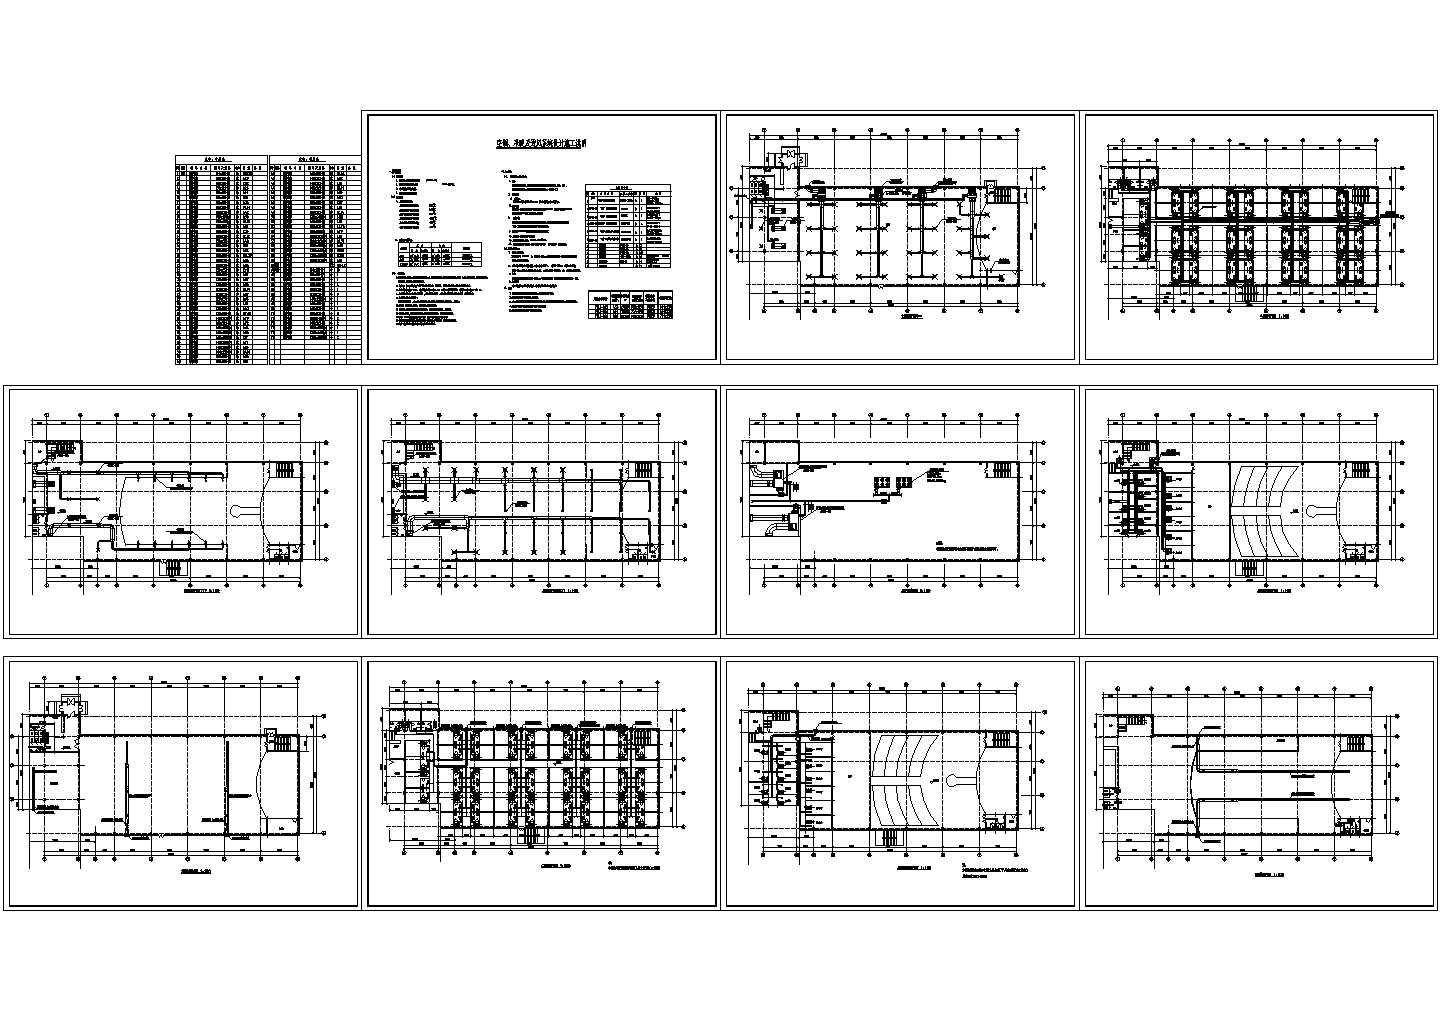 娱乐场所技改项目空调系统设计施工，11张图纸。